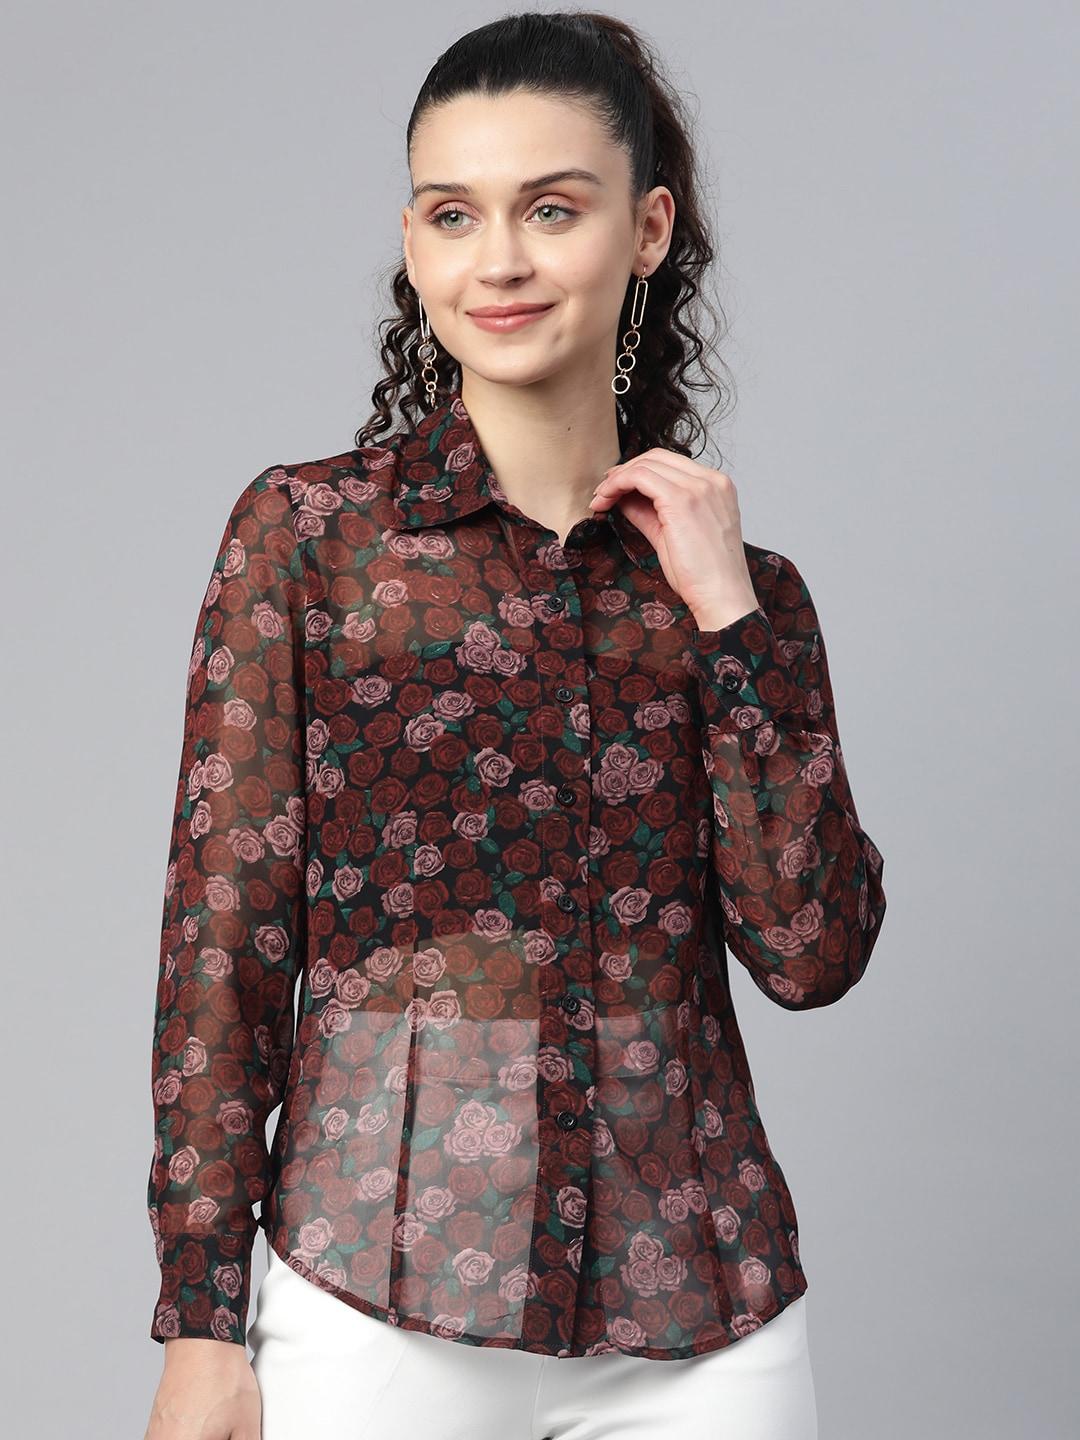 powersutra women maroon comfort floral semi sheer printed casual shirt